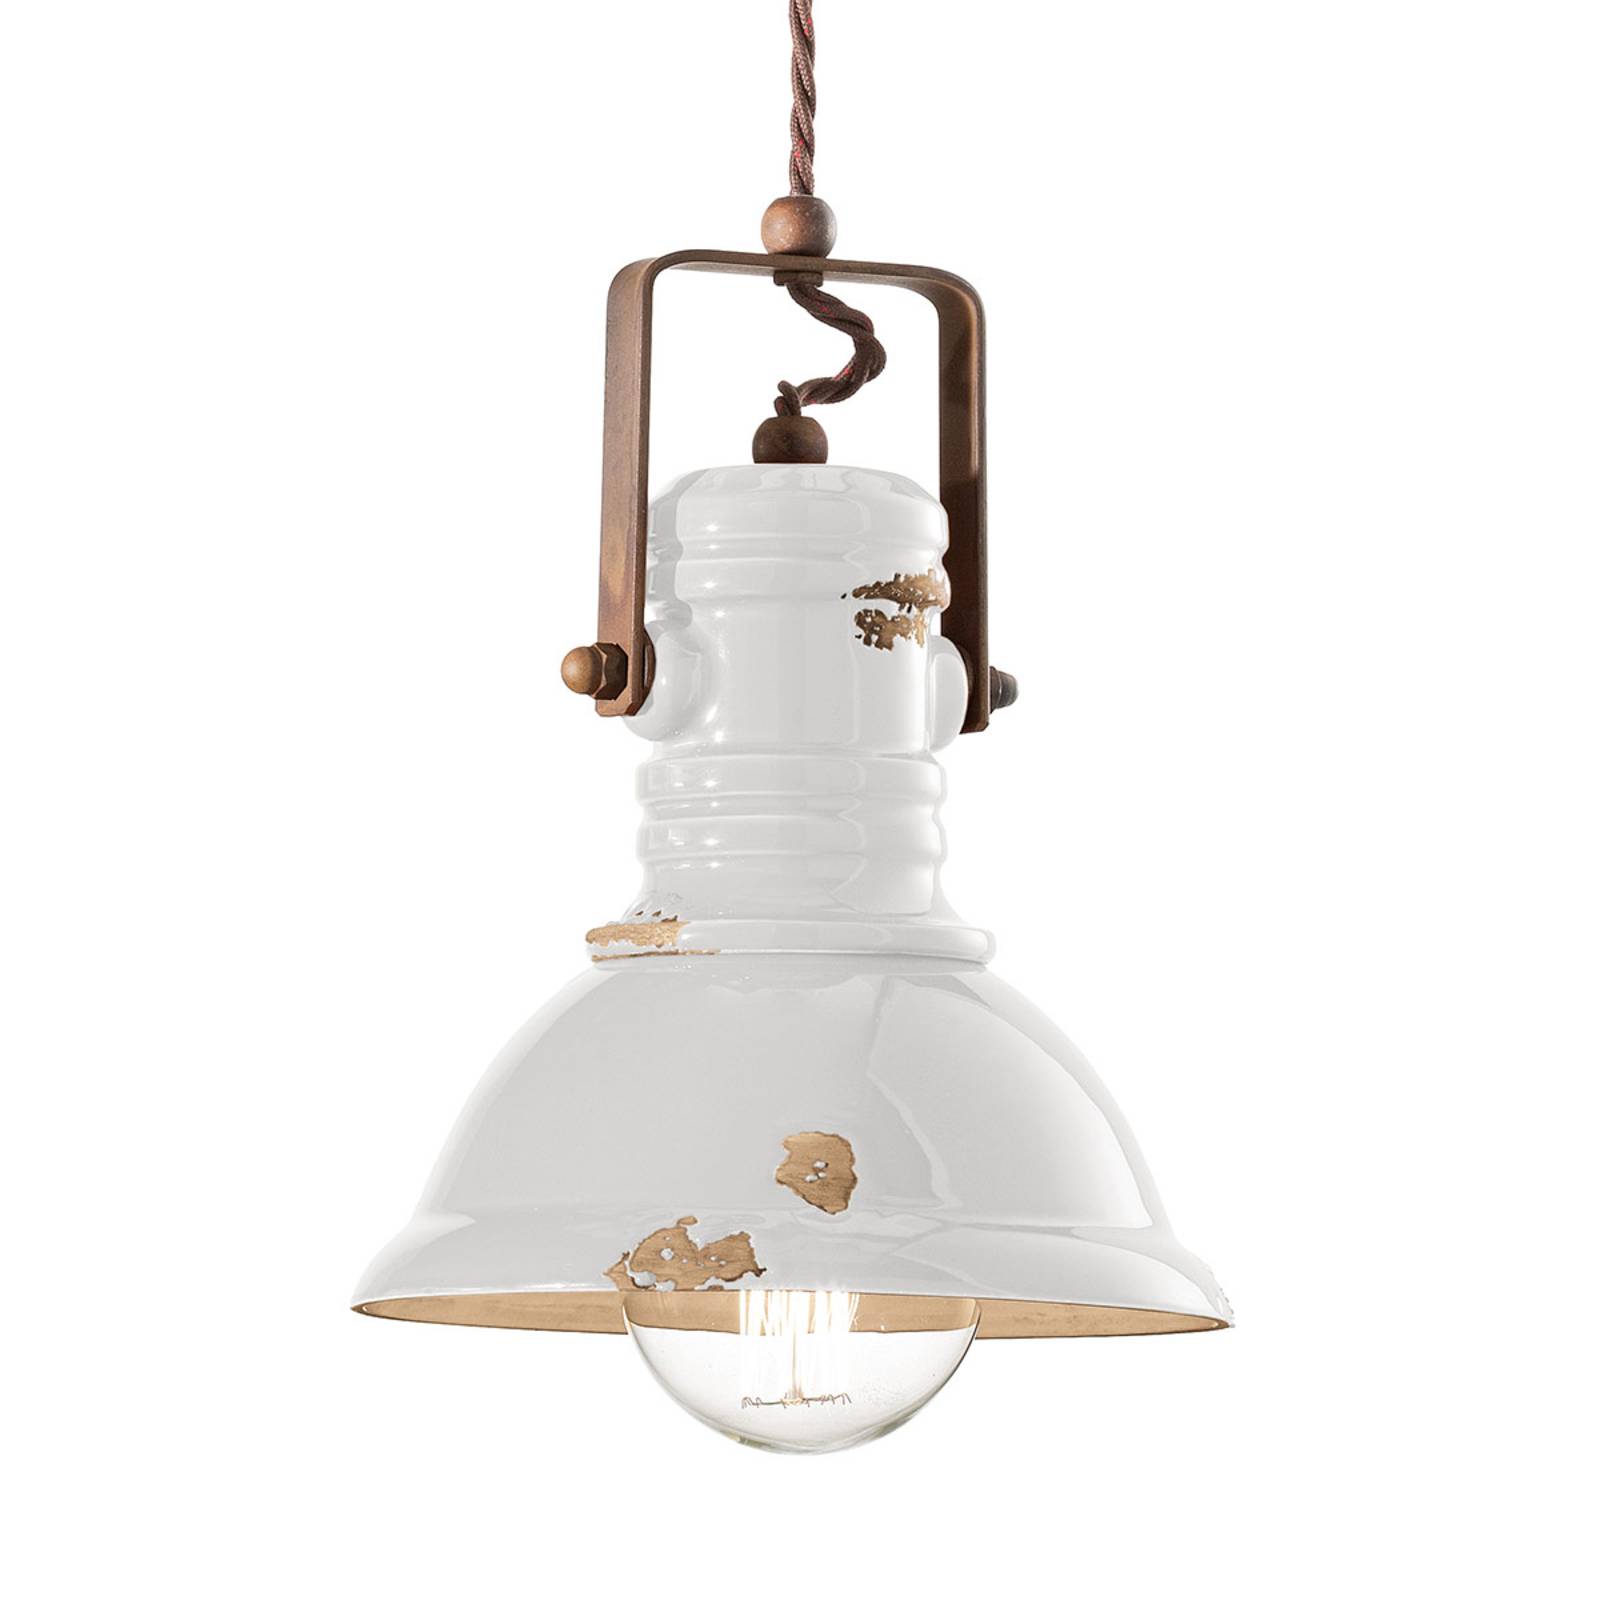 Hanglamp C1691 in industrieel design wit